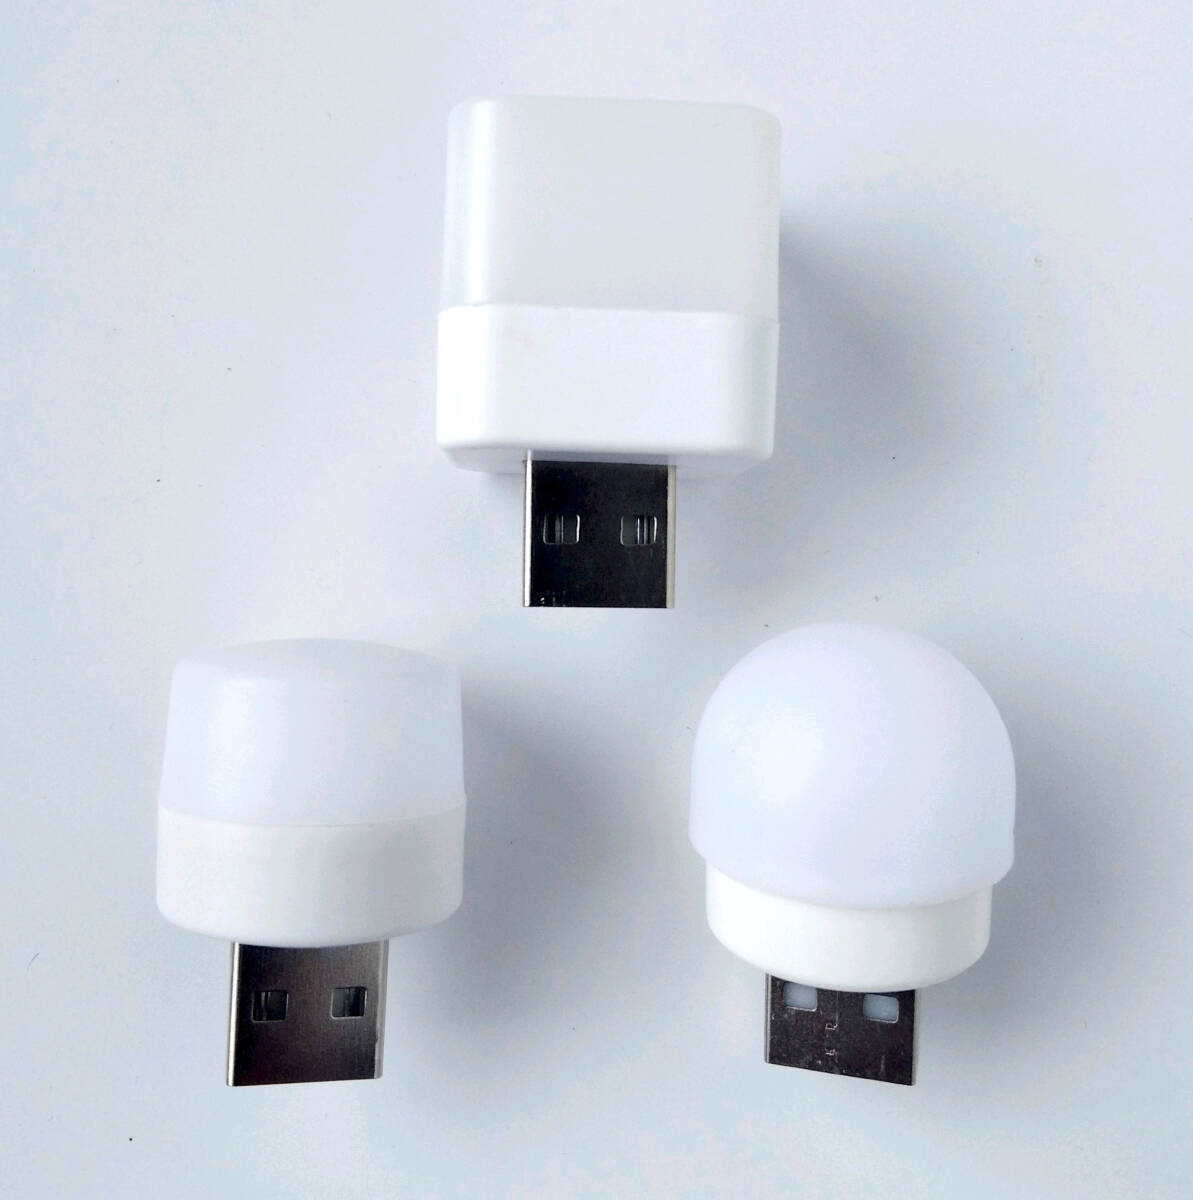 ミニ LEDランプ 3種類セット(円柱形・角形・丸頭形/電球色) 読書 ナイトライト 常夜灯 LEDライト USB_画像1